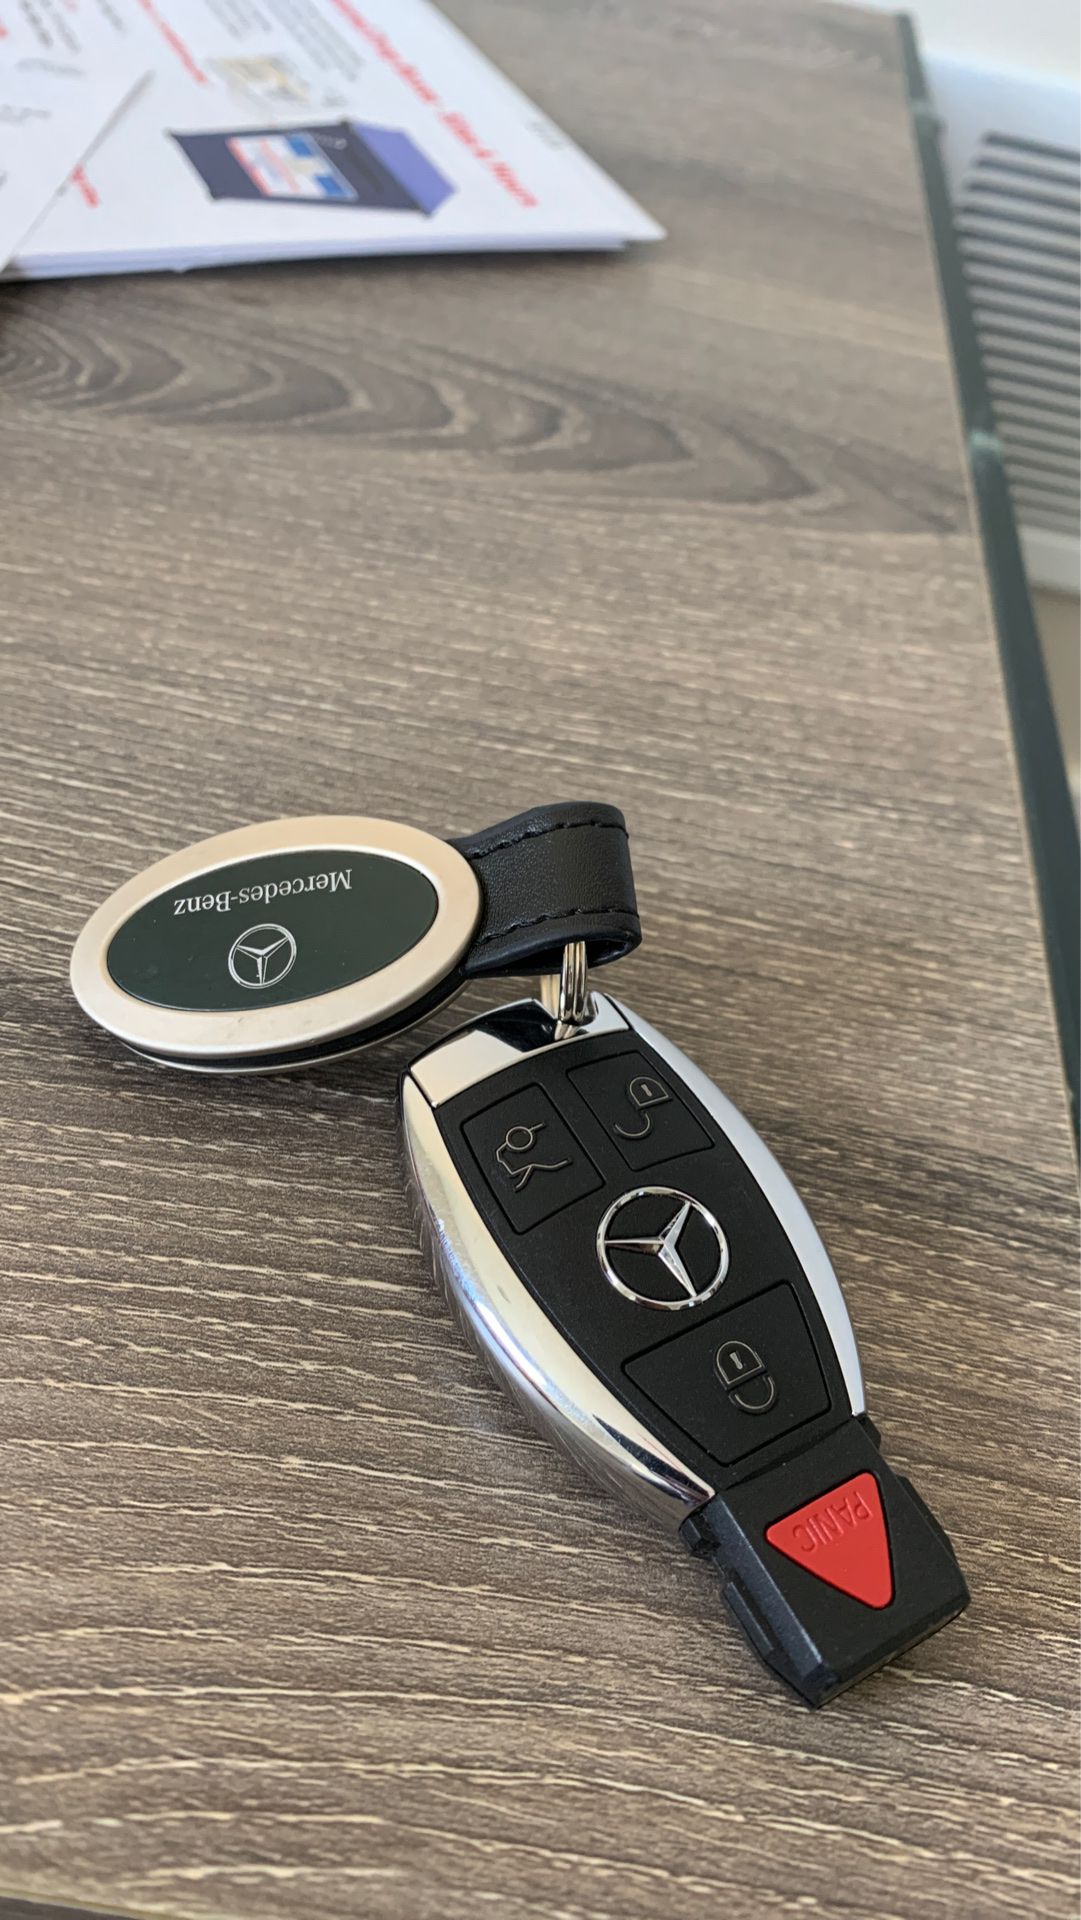 Mercedes Benz key fob (Original Mercedes part)